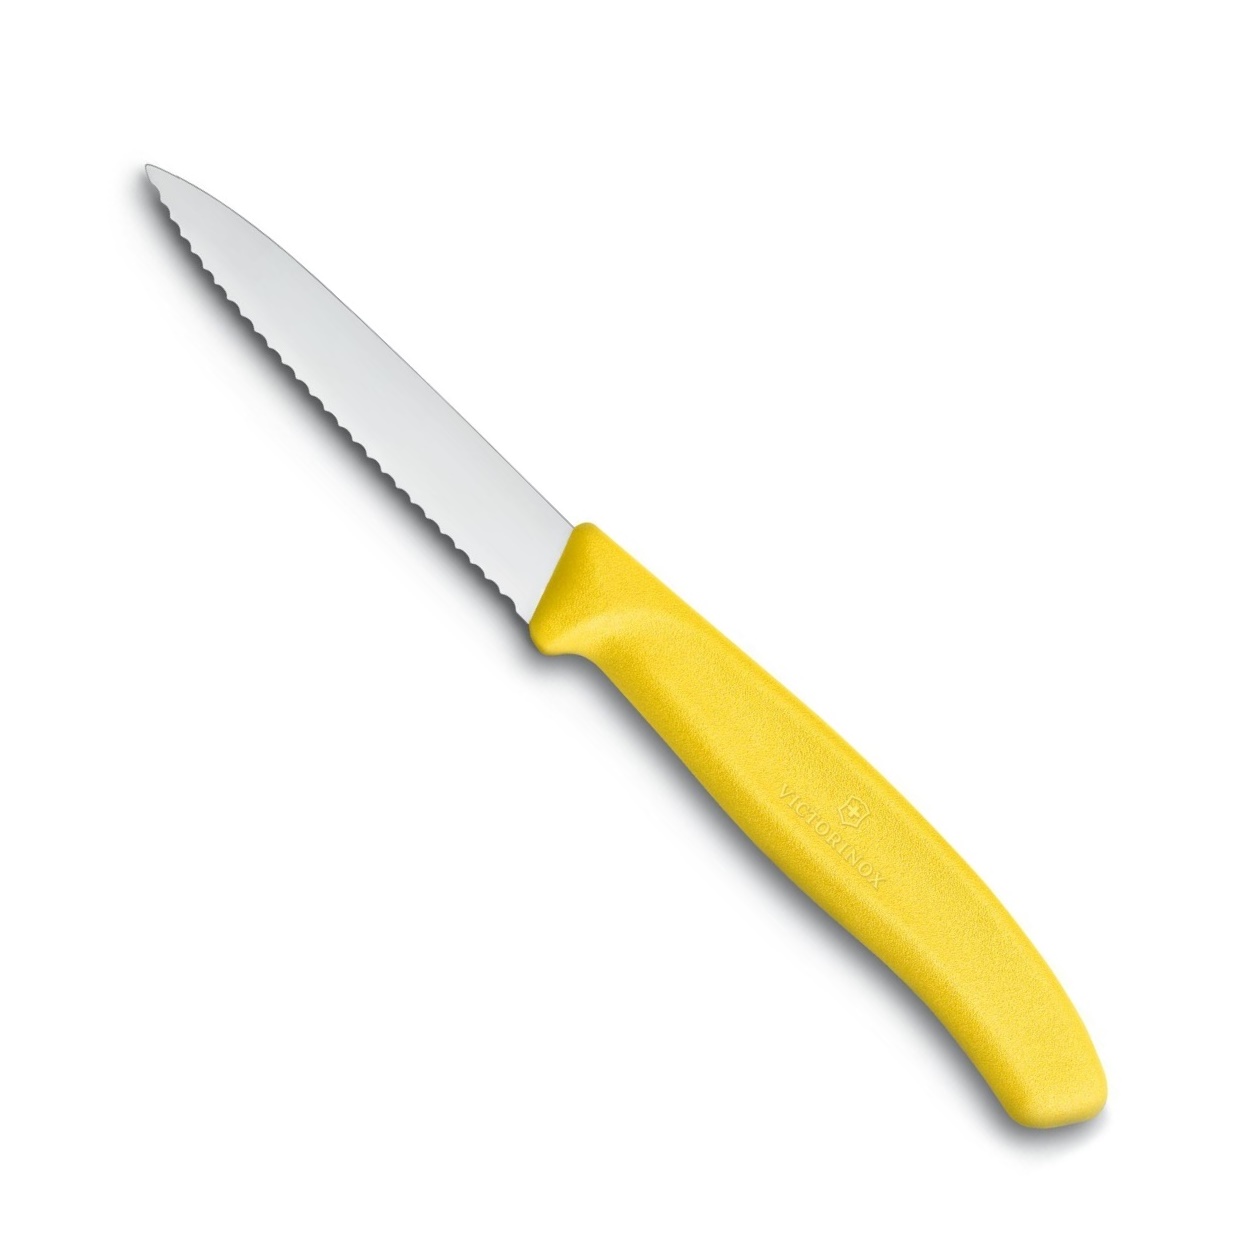 Nůž na zeleninu zoubkovaný SWISS CLASSIC, žlutý 8 cm - Victorinox